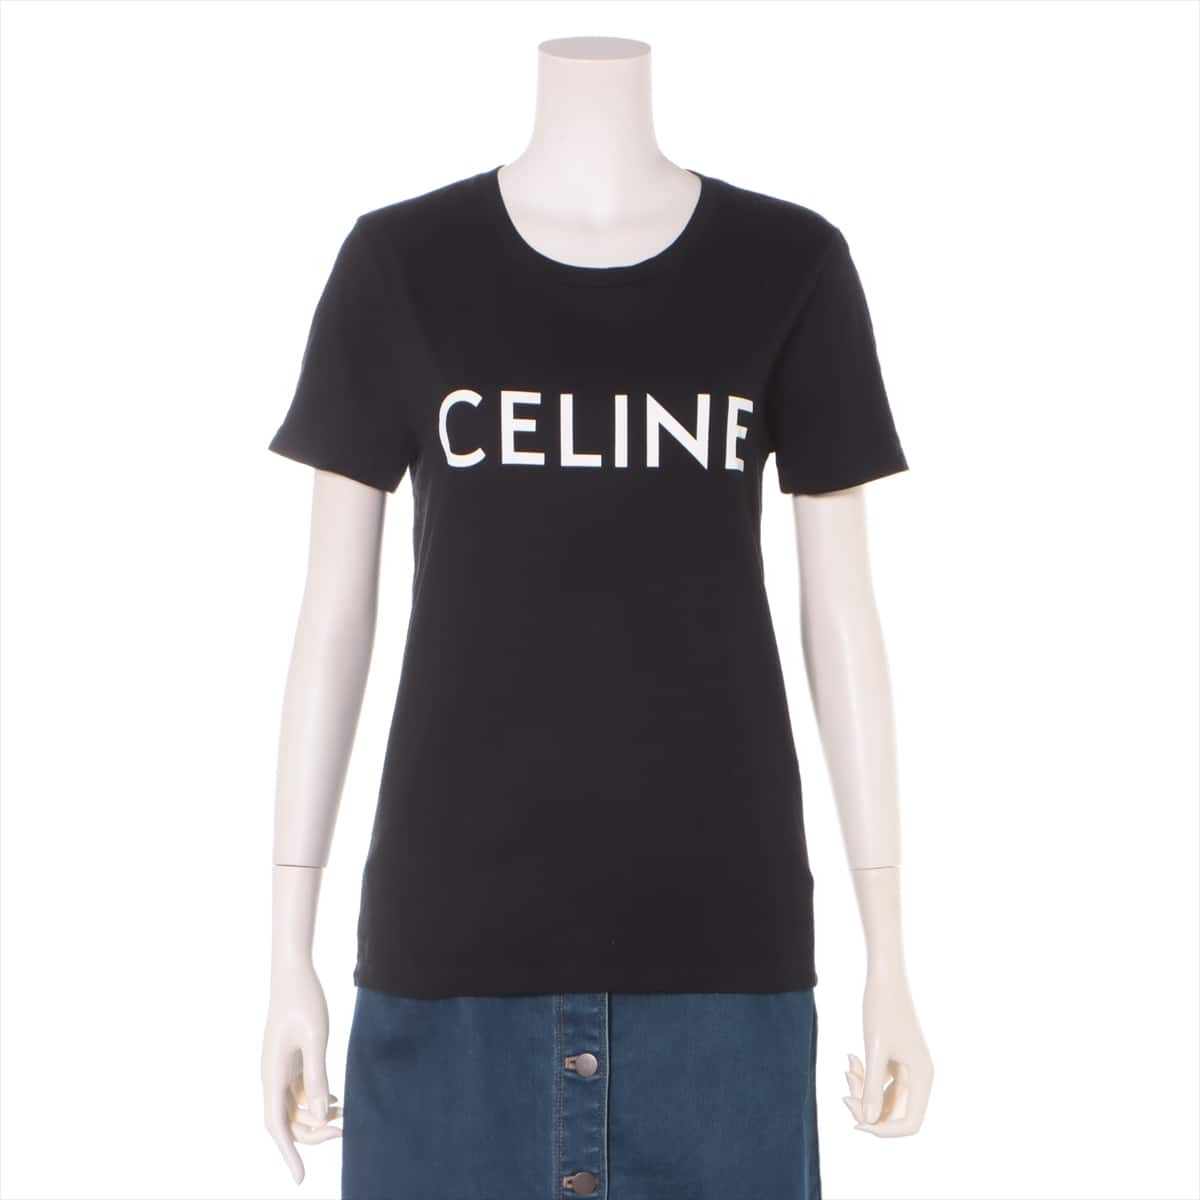 CELINE 20SS Cotton T-shirt S Ladies' Black  2X314916G Eddie period